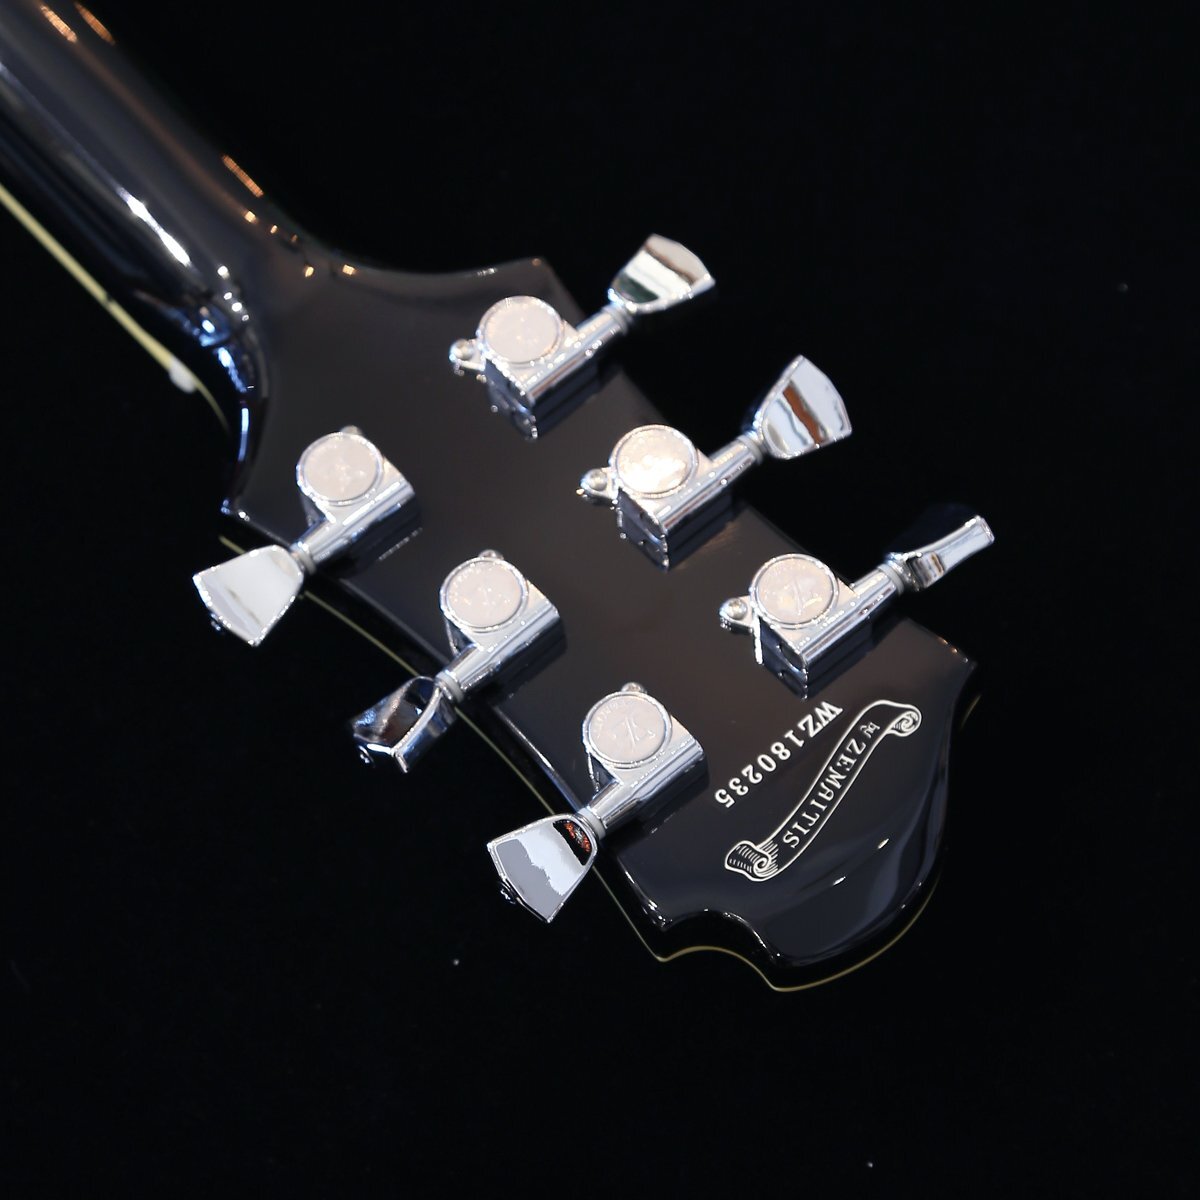 送料無料 新品 アウトレット Zemaitis ゼマイティス エレキギター Z22 EC-BLK レア 国内未発売モデル 黒 ブラック ギグバッグ付 ギター_画像6